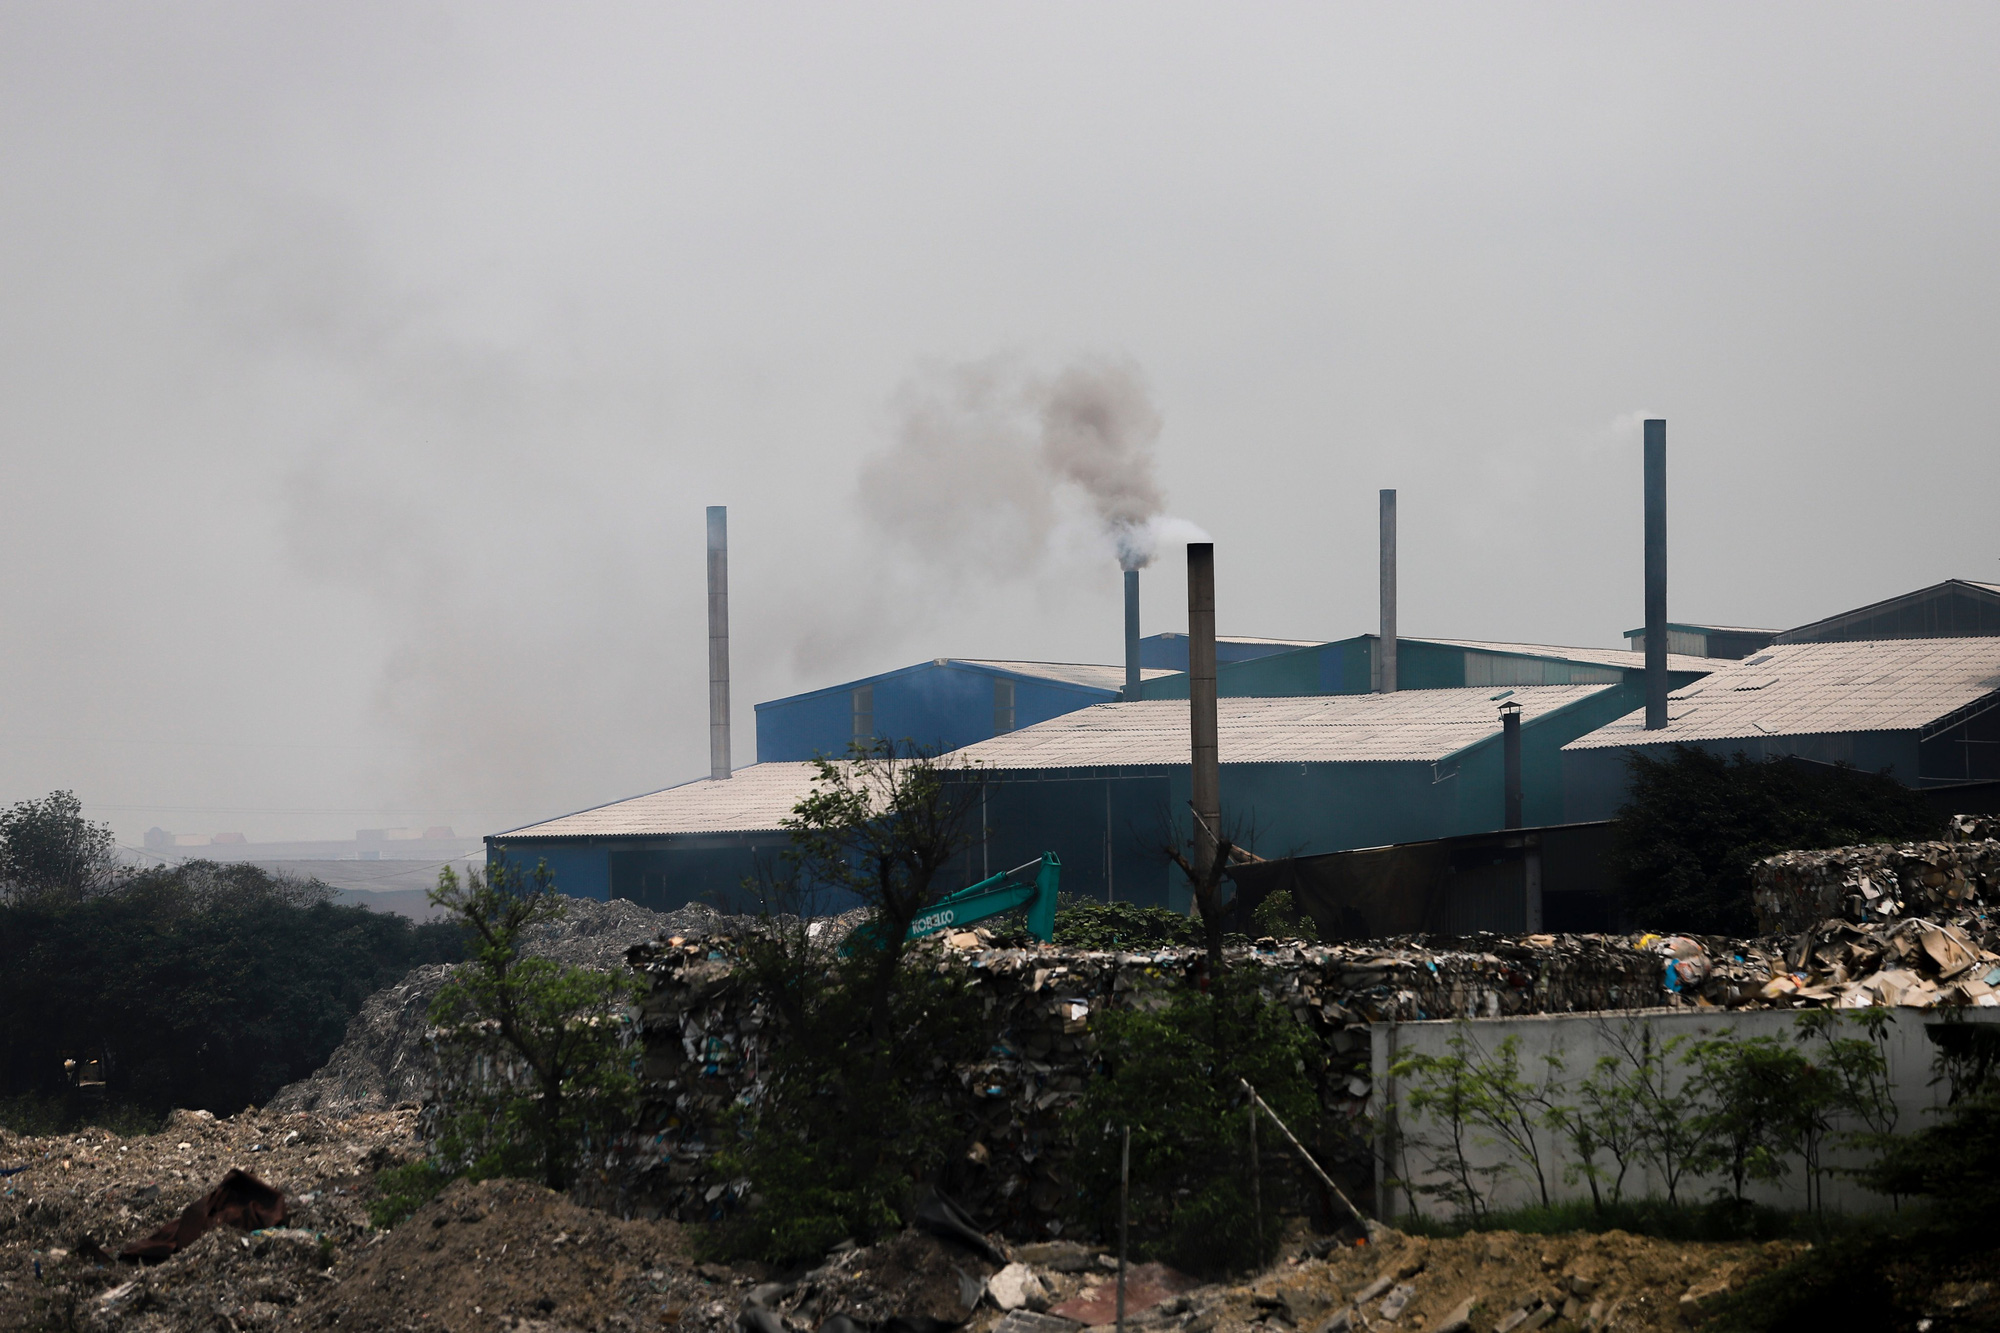 Bắc Ninh: Xử lý hình sự các trường hợp chống đối, gây ô nhiễm môi trường kinh hoàng ở làng giấy Phong Khê - Ảnh 2.